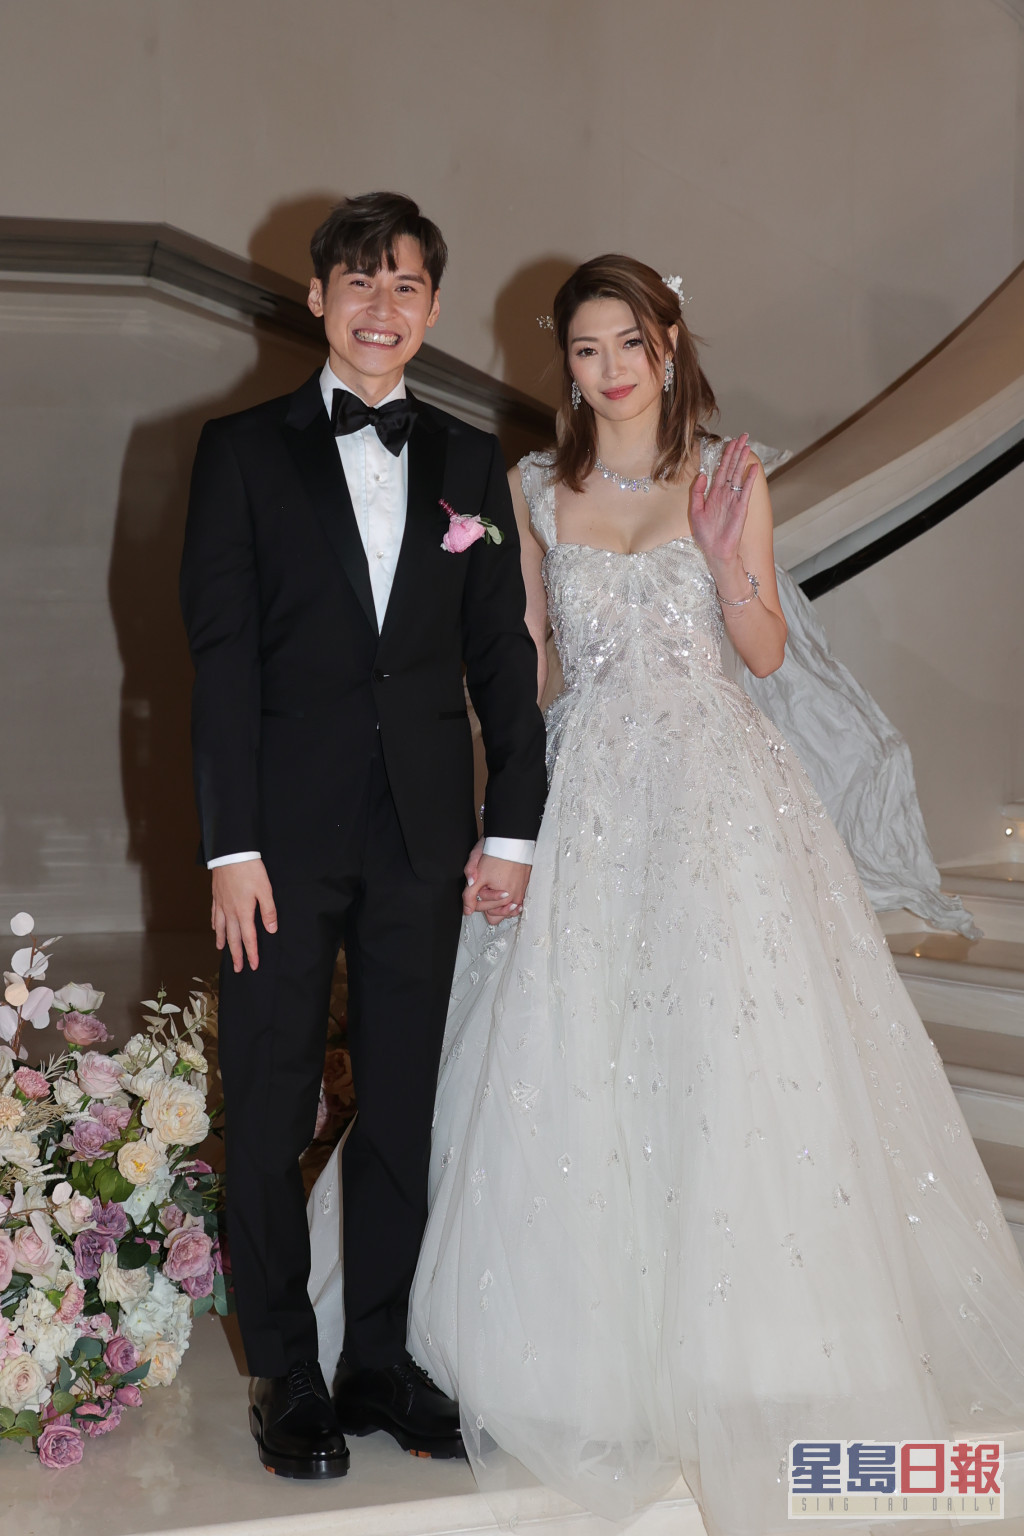 泳兒的同門藝人陳家樂娶老婆。